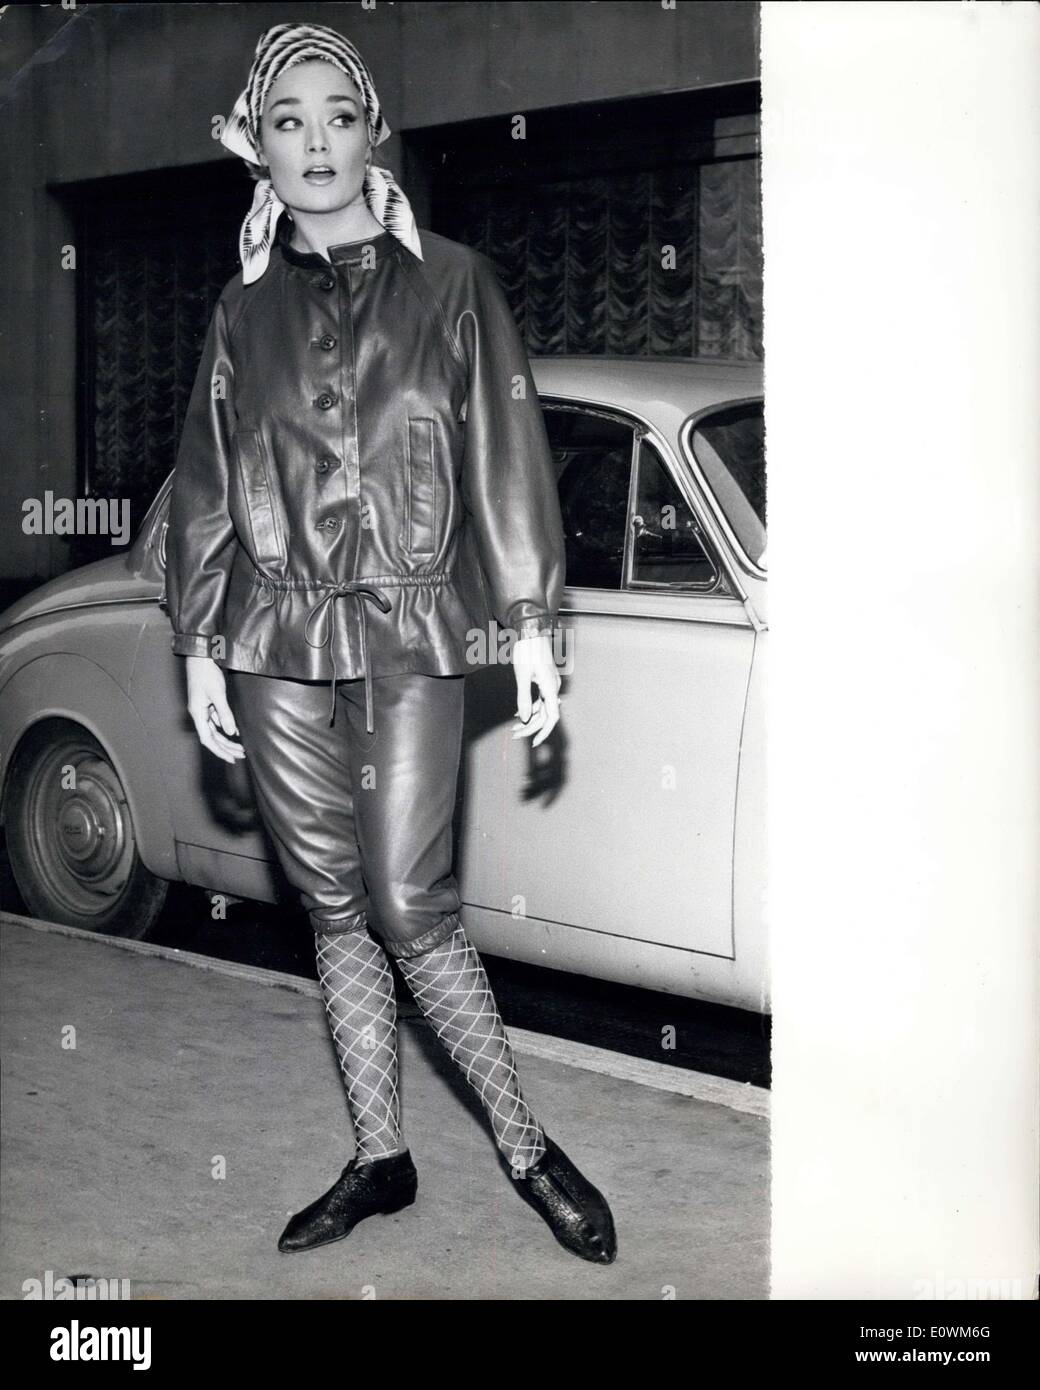 Septembre 04, 1963 - Fashions en cuir : UN montrant de la collection Nina  Ricci de mode en cuir, être Elma Sportswear, s'est tenue à l'hôtel Westbury  Mayfair à Londres. Photo :